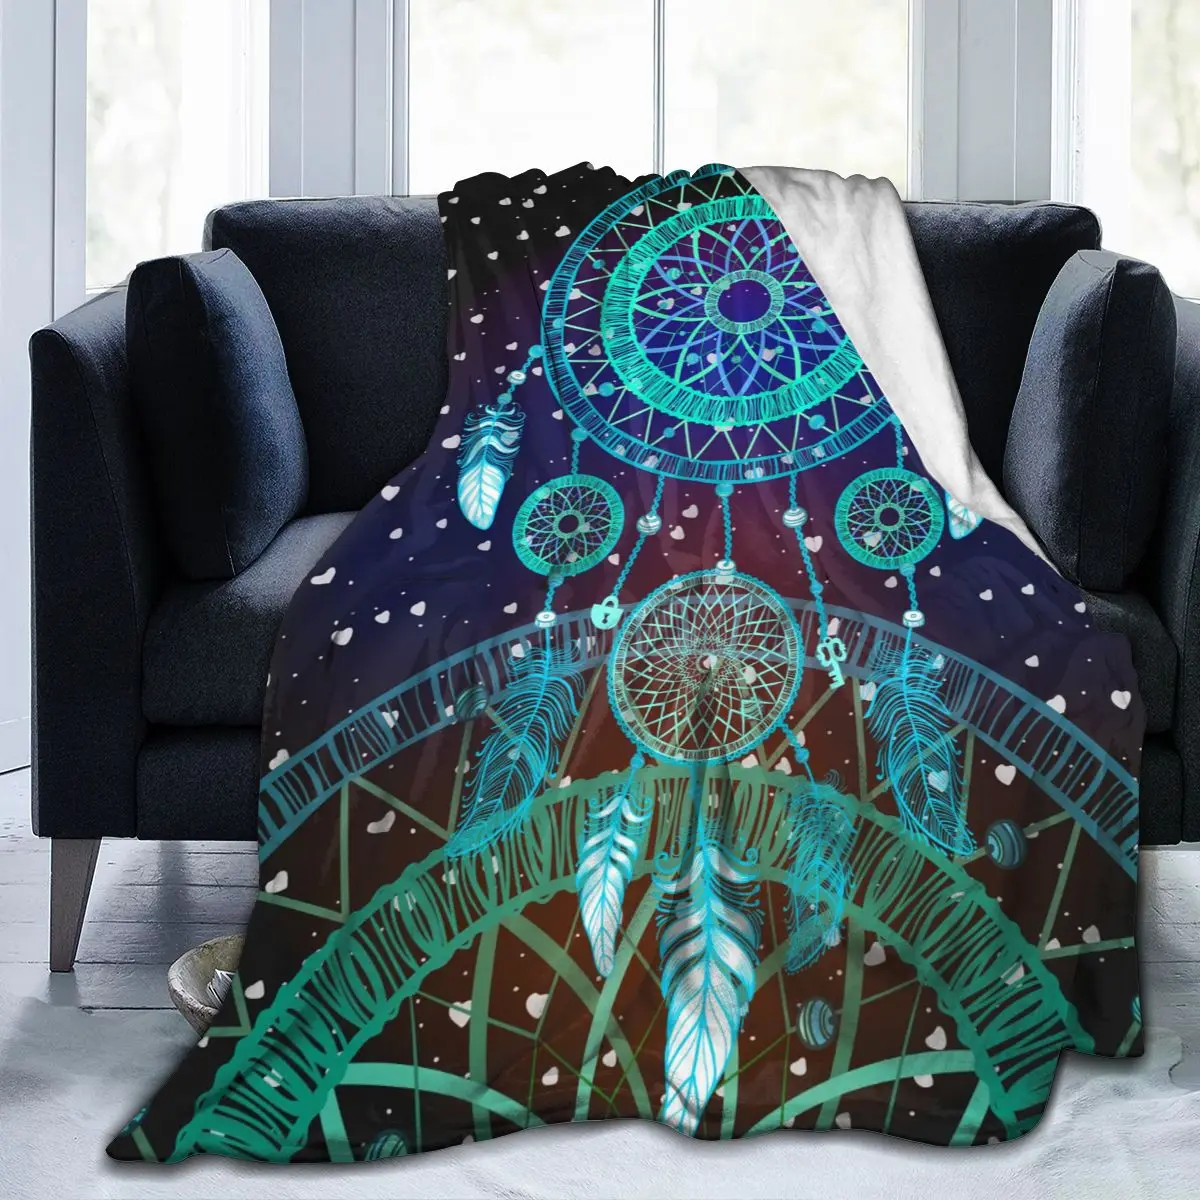 

Фланелевое одеяло, цветное ультрамягкое Флисовое одеяло в стиле Ловца снов, покрывало для халата, дивана, кровати, путешествий, дома, зима, в...